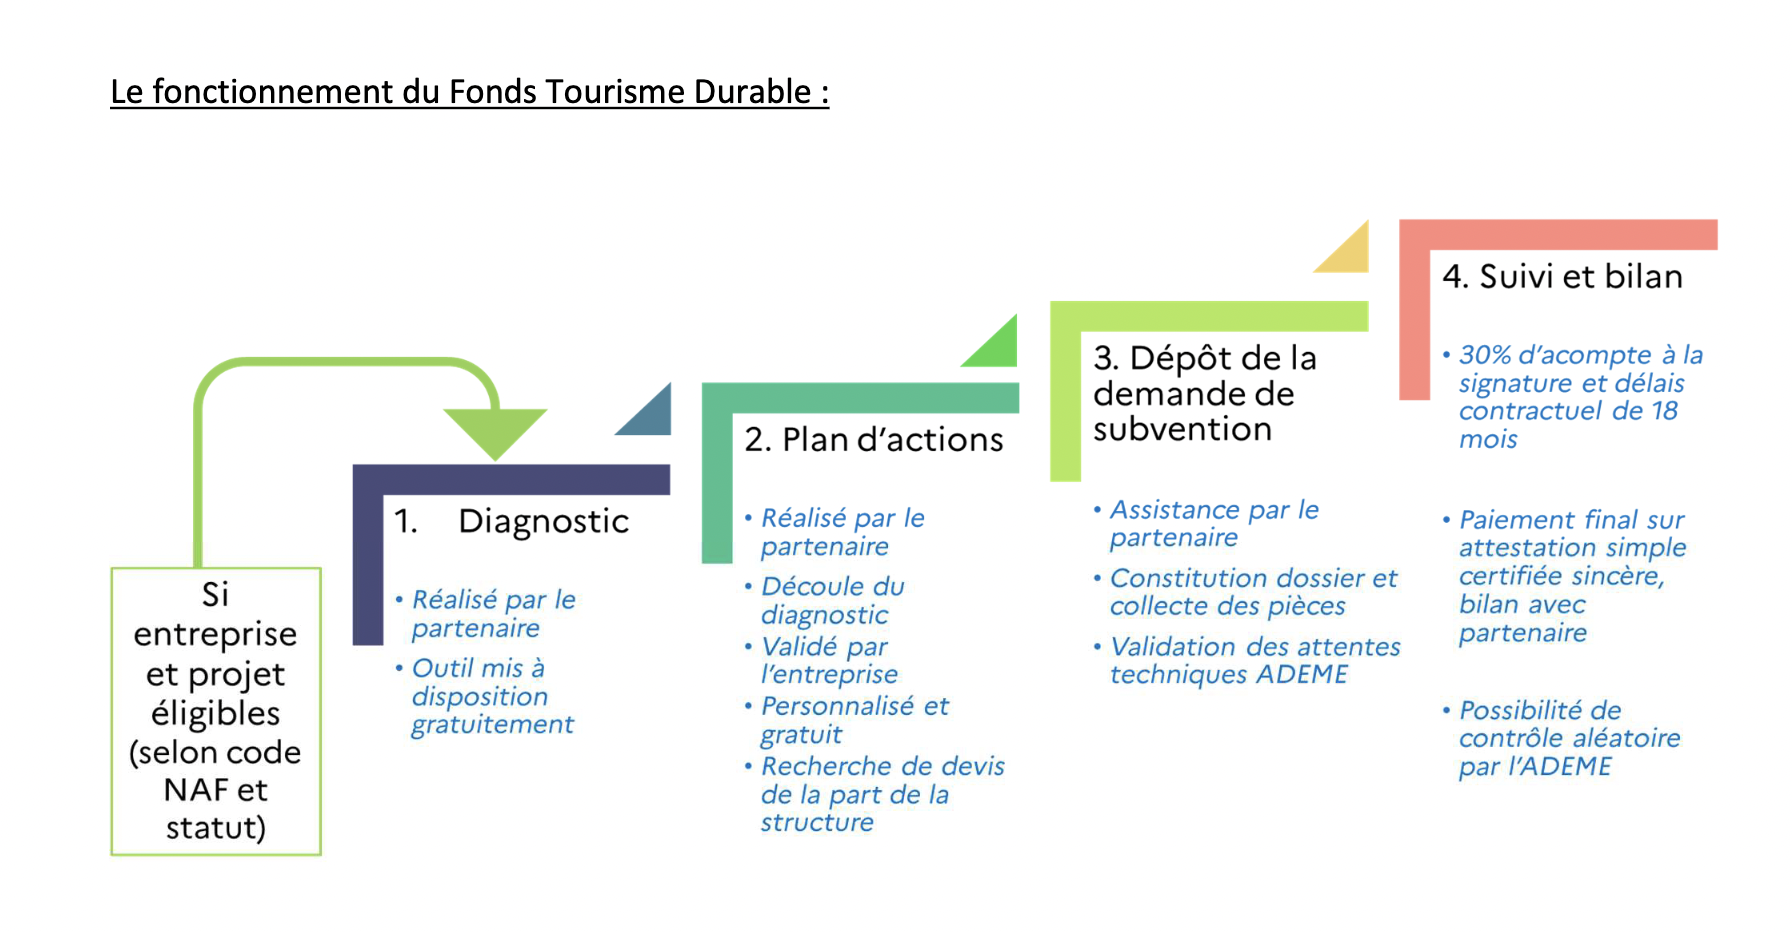 Le Fonds Tourisme Durable intègre le plan Destination France : Les professionnels sensibilisés à la Réunion et Mayotte